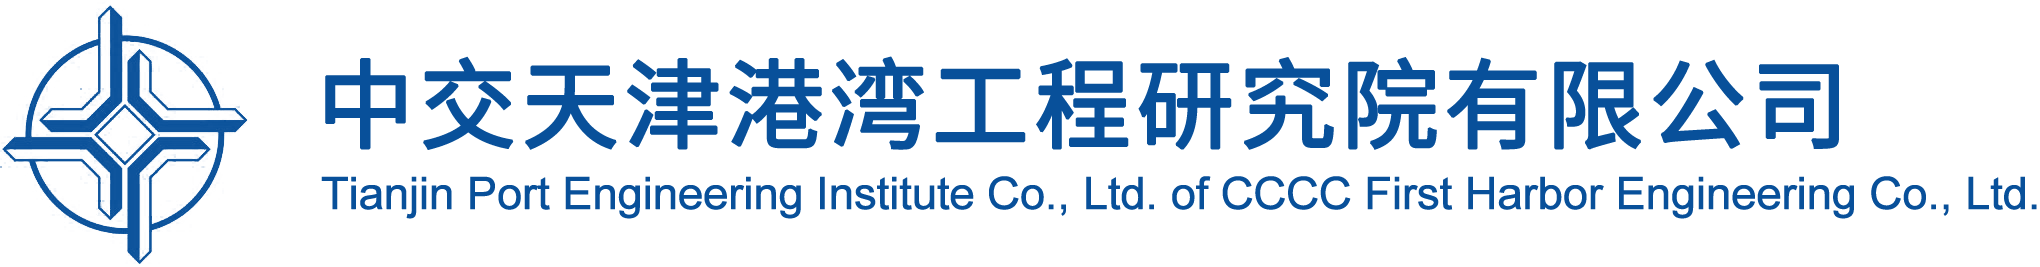 中交天津港湾工程研究院有限公司-高清logo.png